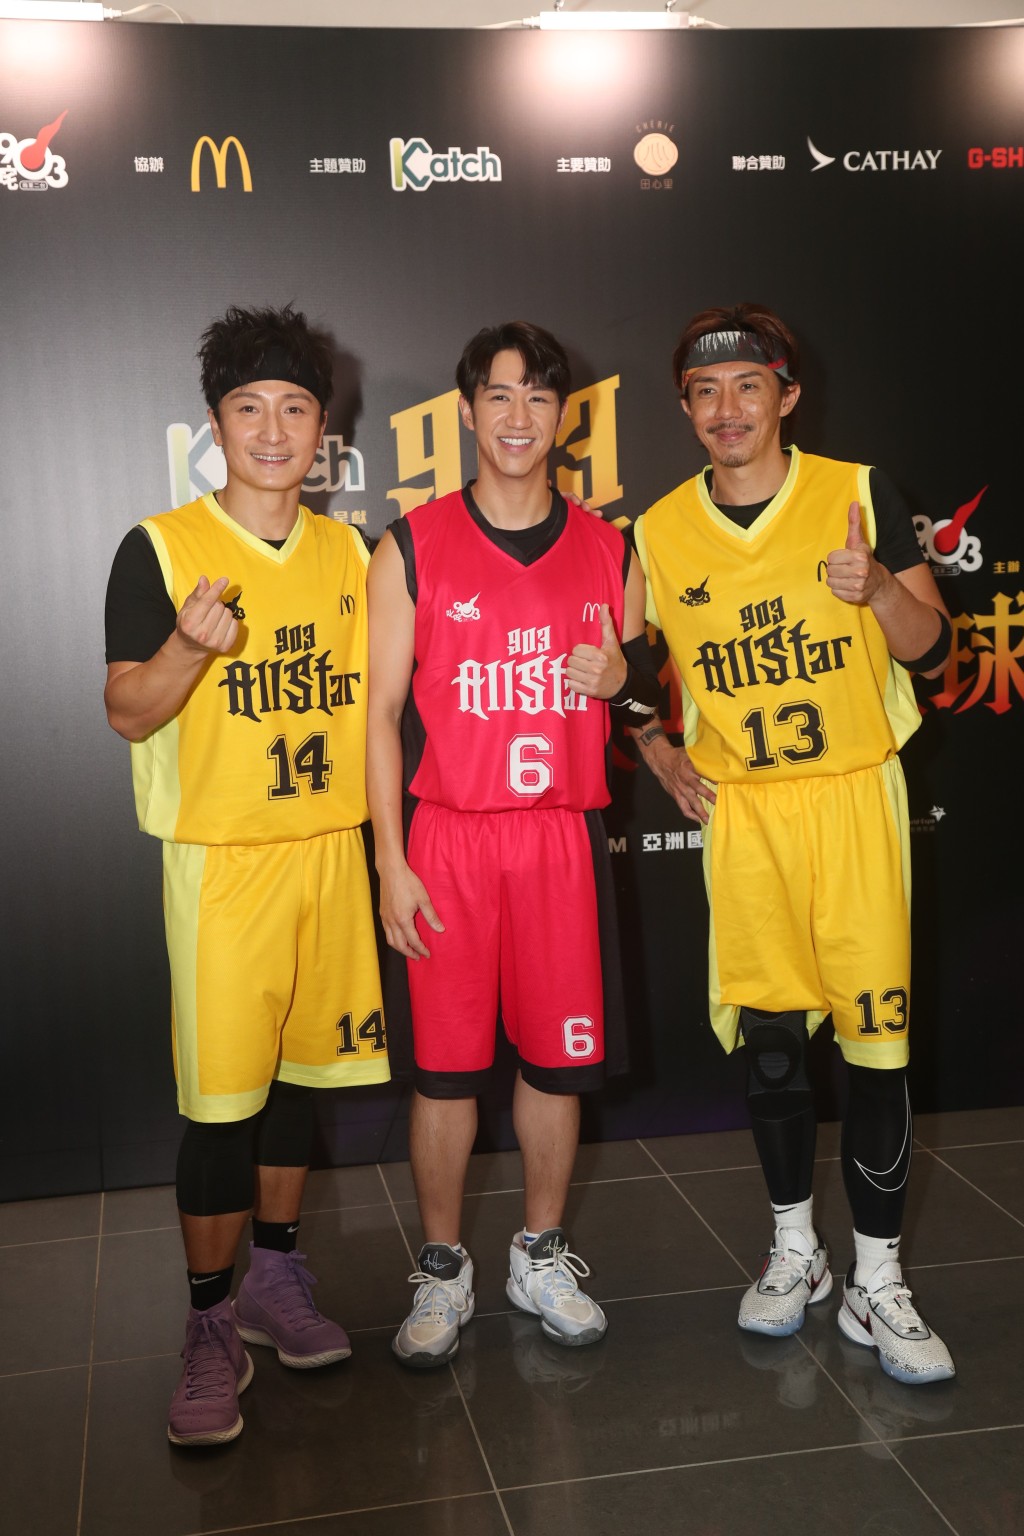 張繼聰（阿聰）、方力申（小方）及馮允謙（Jay）昨日(11日)到機場博覽館分別代表歌星隊及DJ隊的籃球賽。